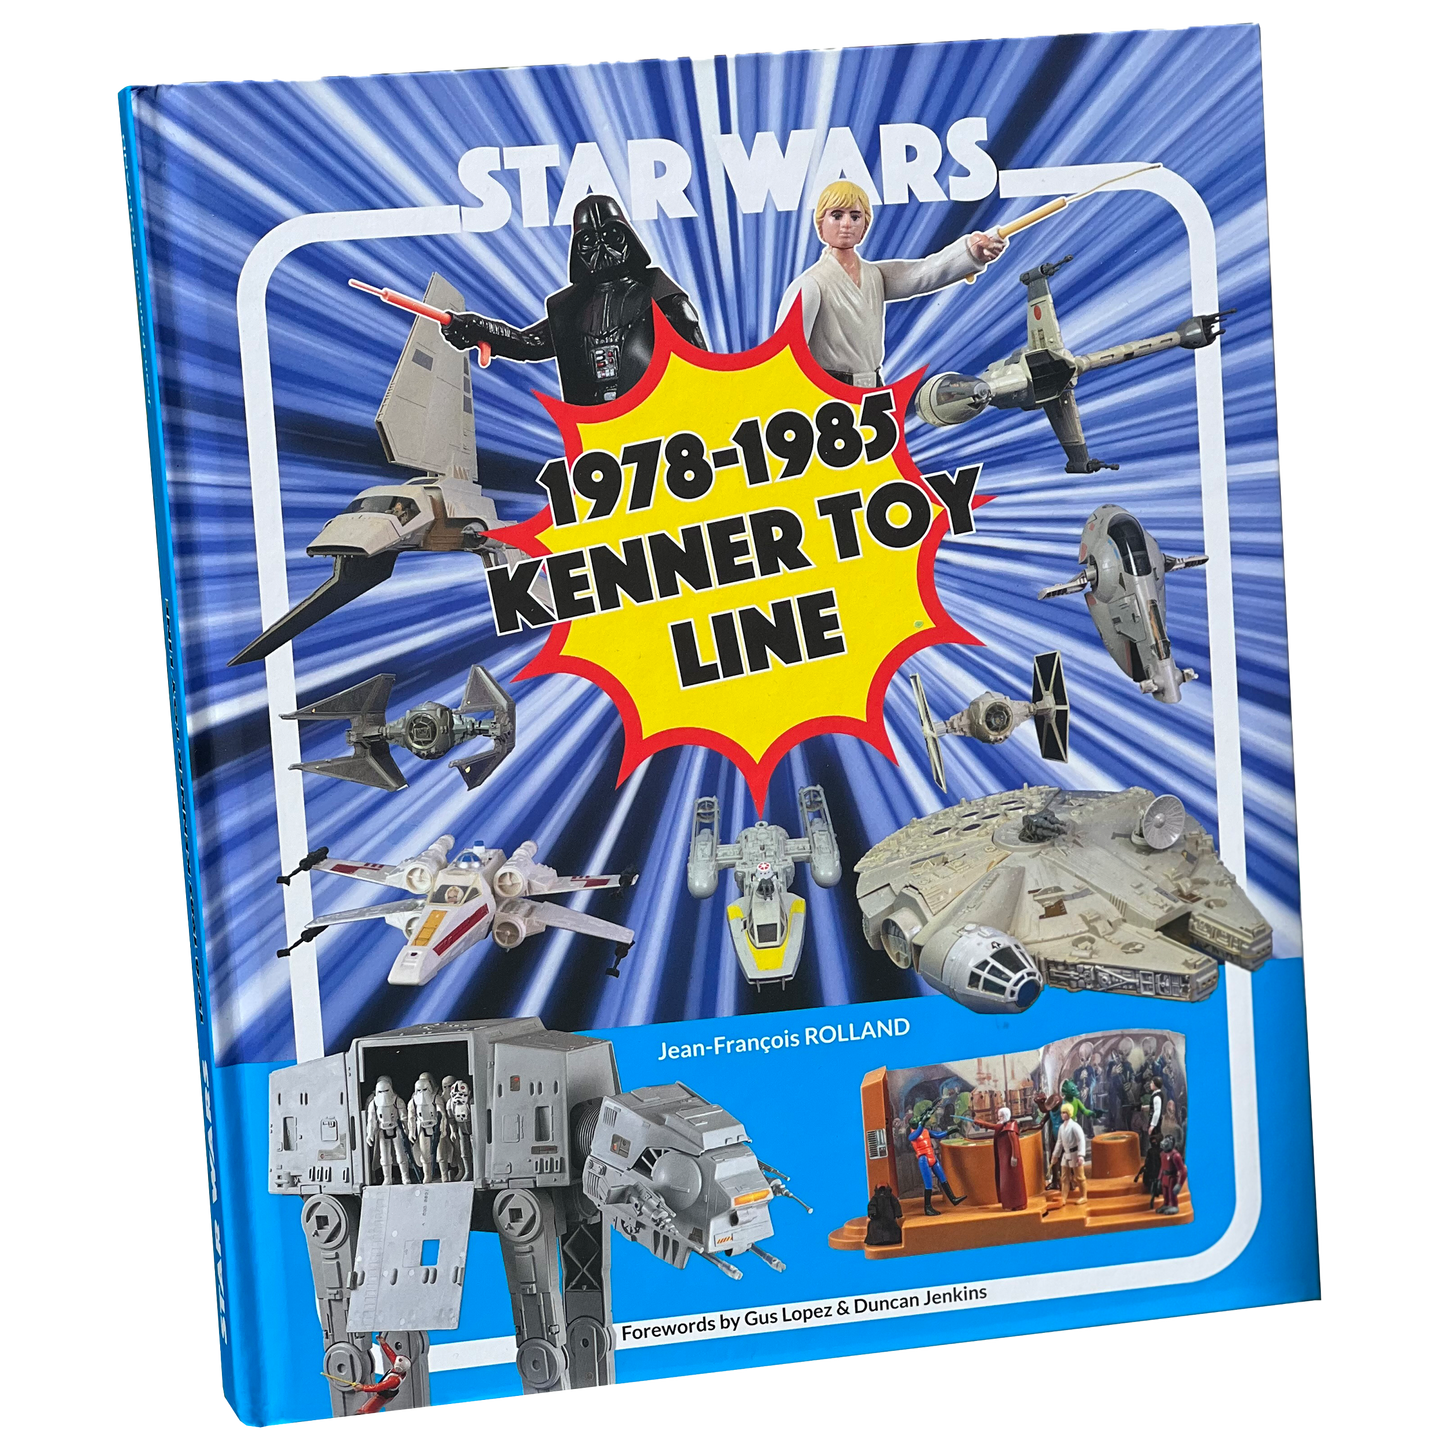 Star Wars 1978-1985 Kenner Toy Line